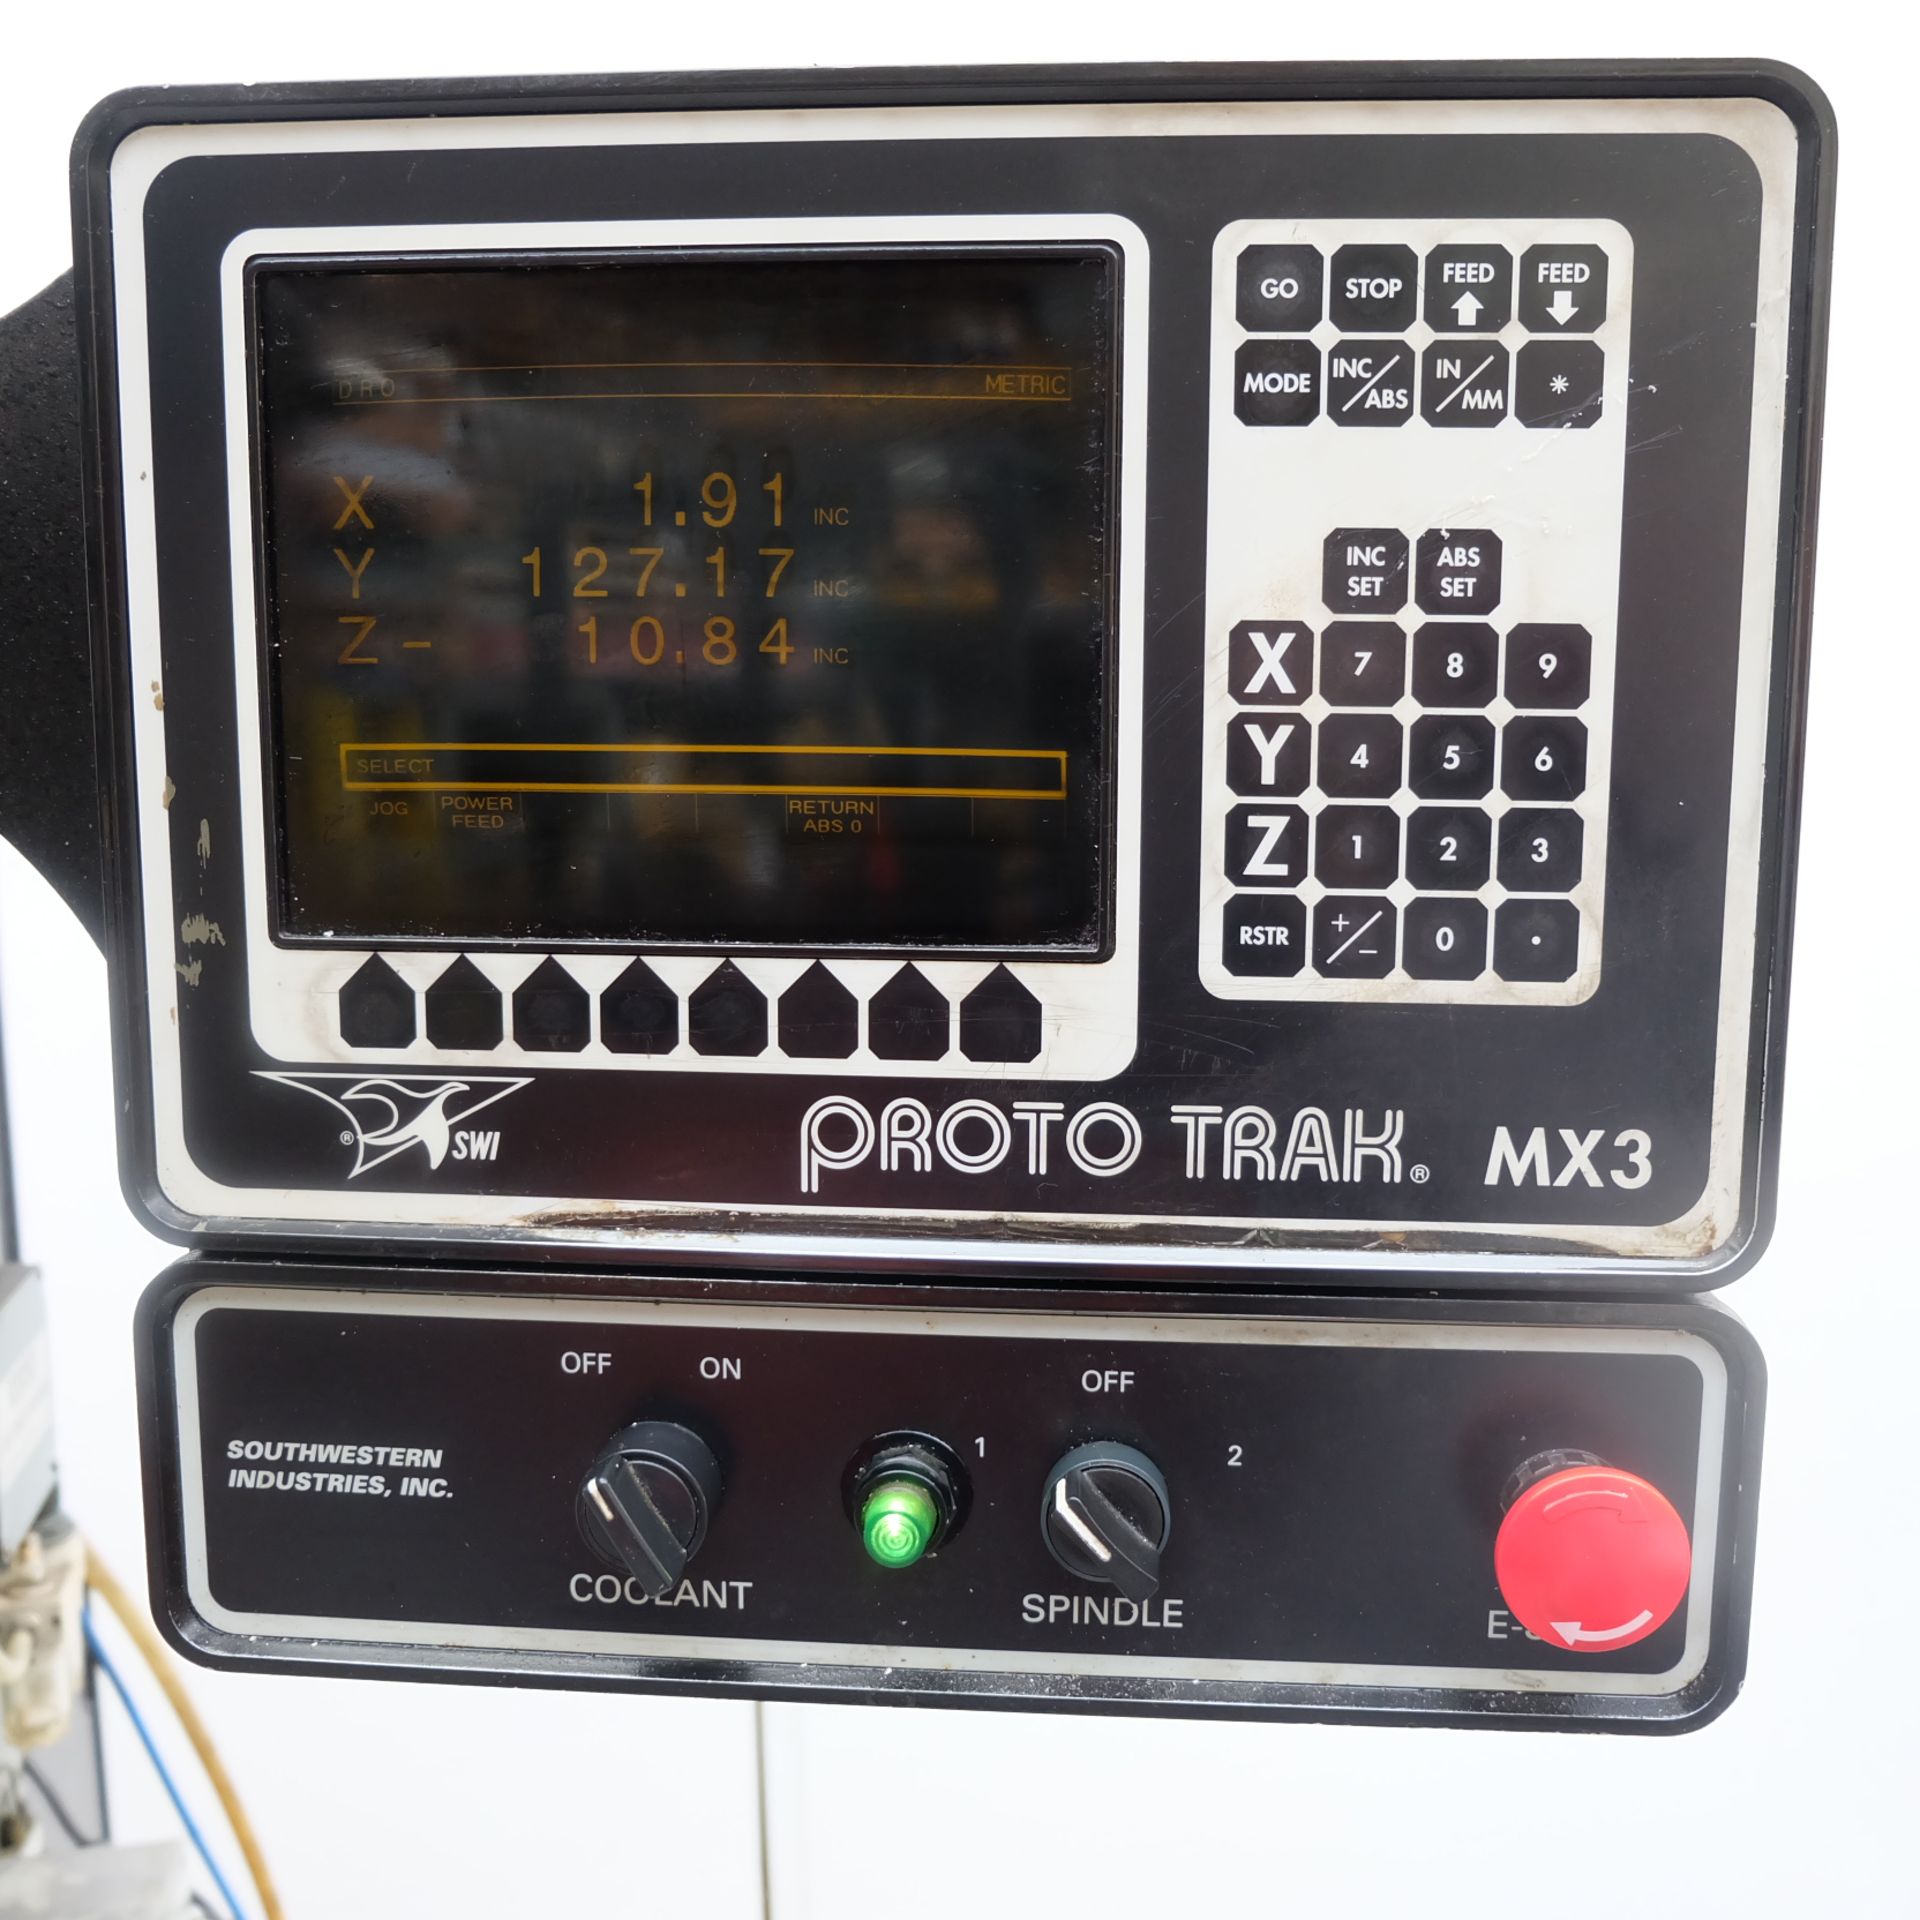 Trak DPM Model bm 2V-100V-U 3 Axis CNC Bed Mill. With ProtoTRAK MX3 Control. - Image 10 of 12